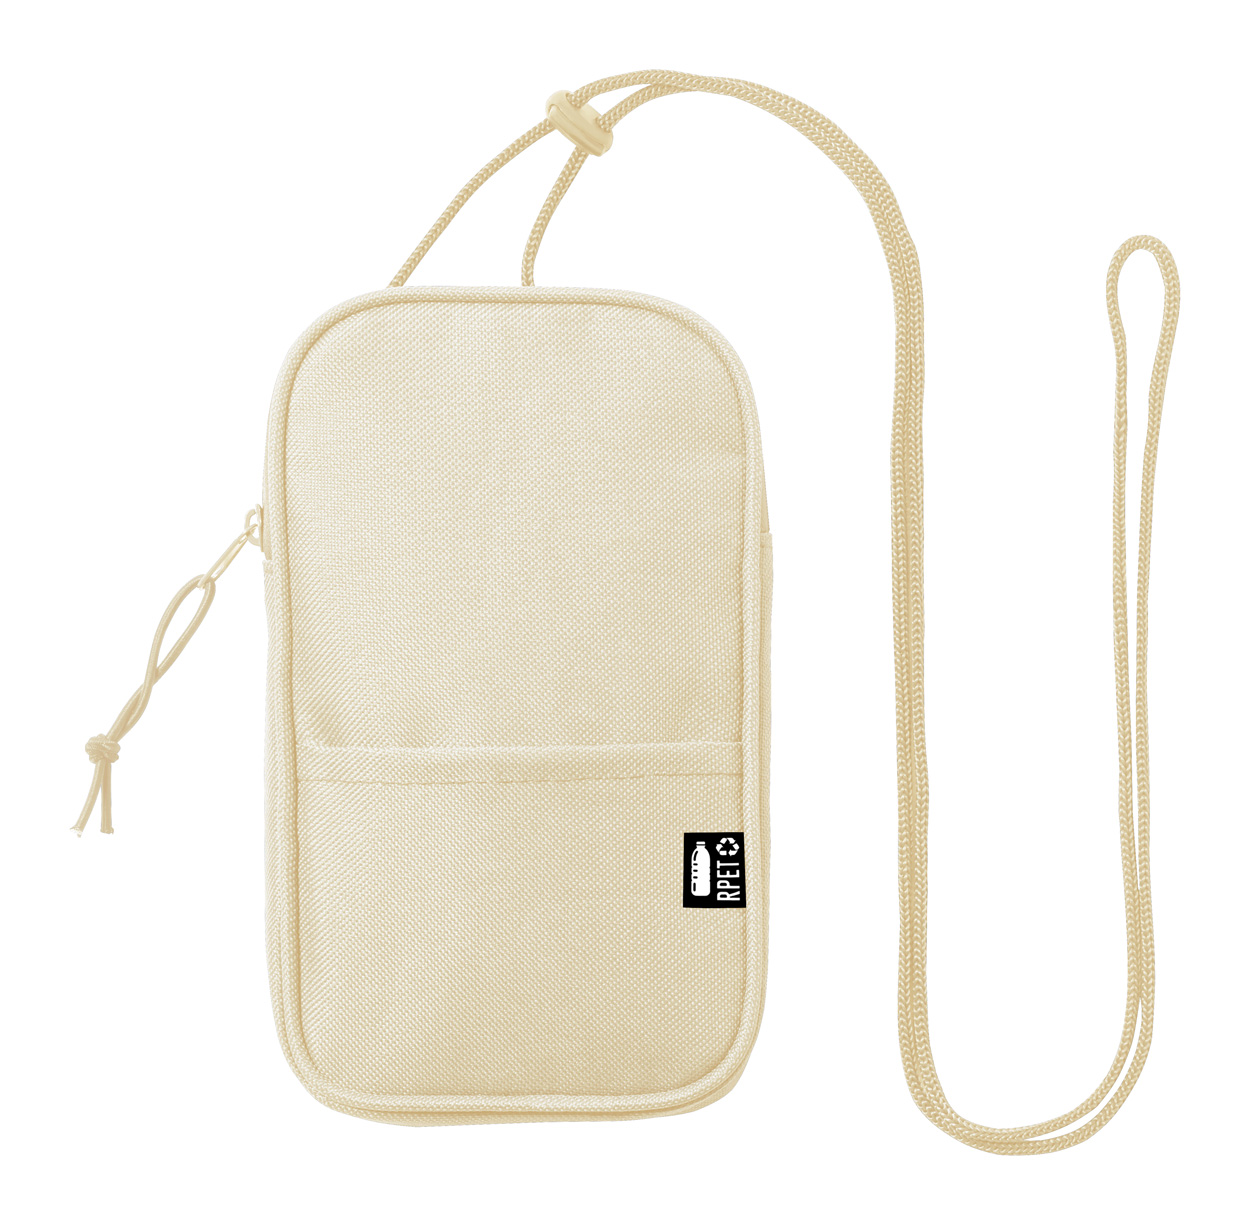 Landry RPET shoulder bag - beige